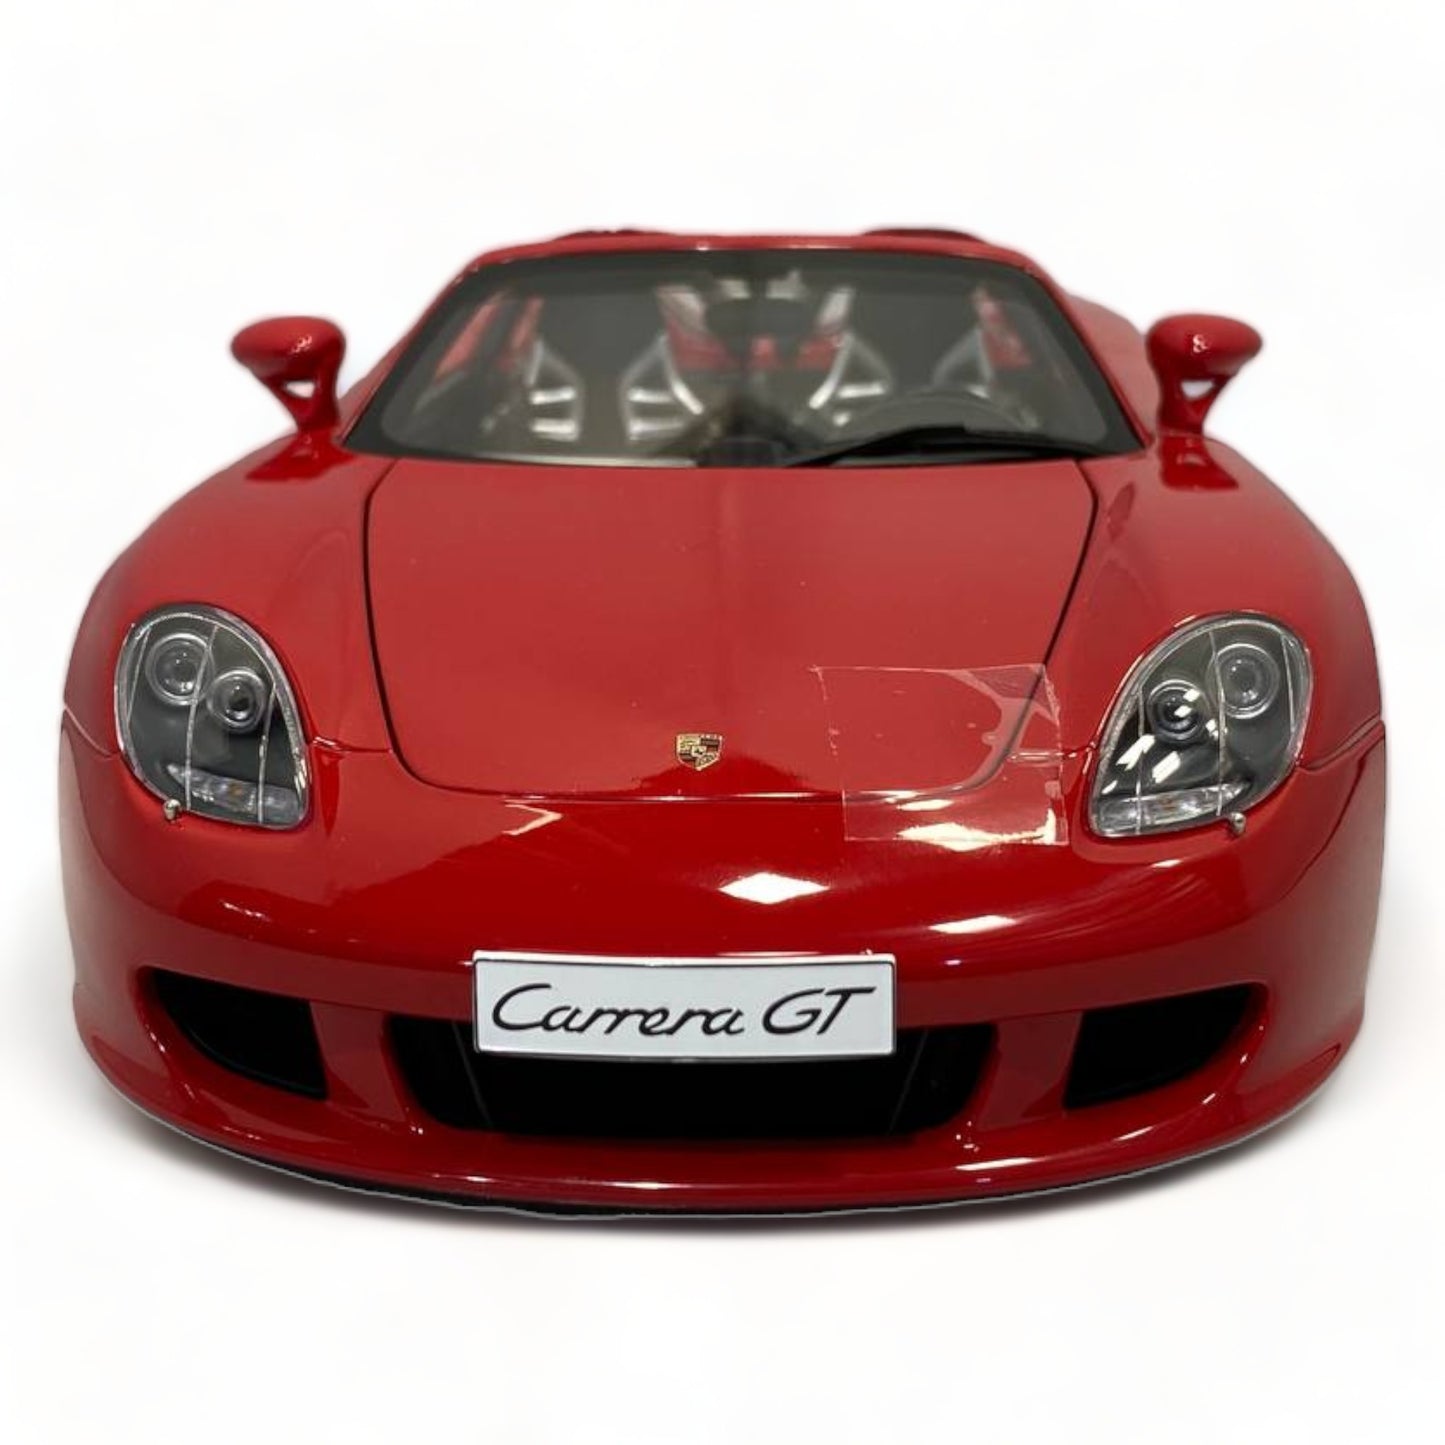 Autoart Porsche Carrera GT - Red (1/18 Scale) MOdel Car|Sold in Dturman.com Dubai UAE.